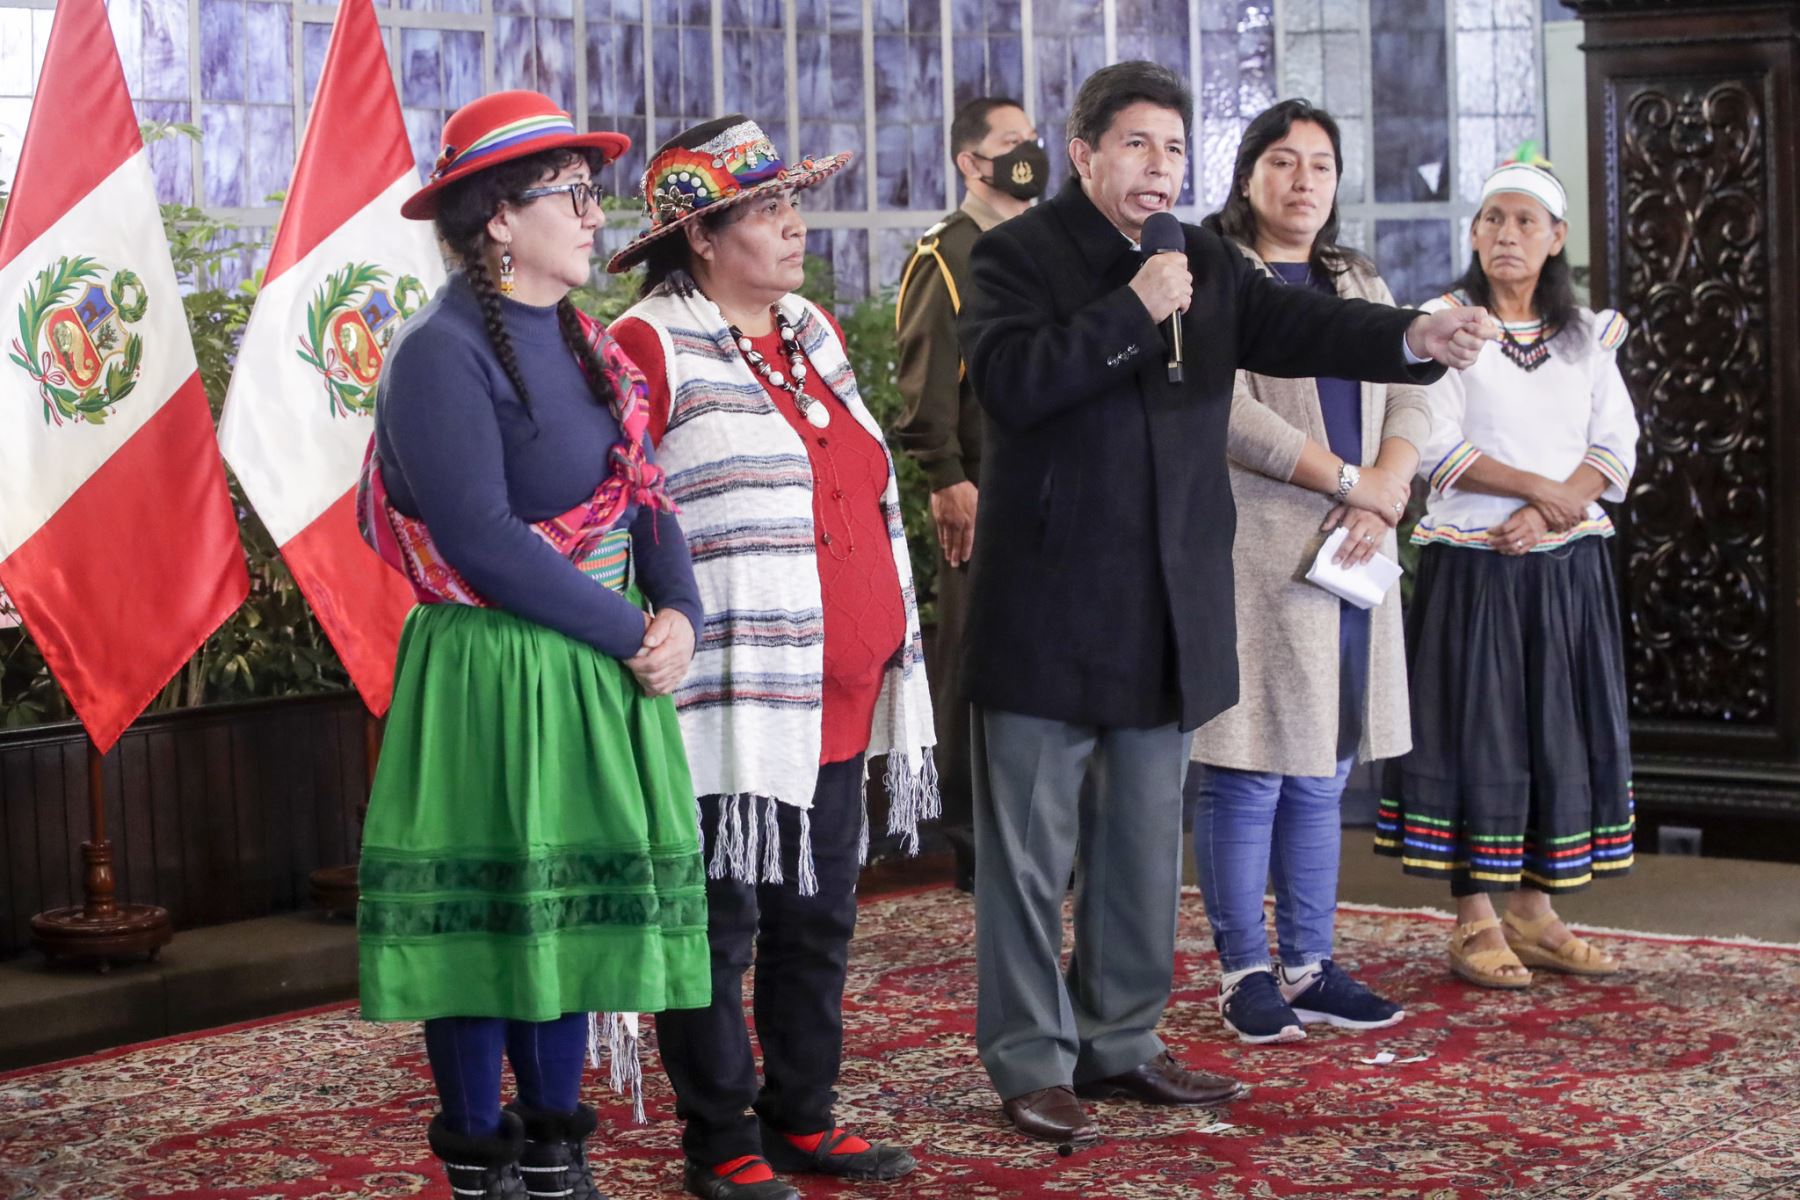 Presidente de la República, Pedro Castillo, sostiene reunión con la Federación Nacional de Mujeres Campesinas, Artesanas, Indígenas, Nativas y Asalariadas del Perú (FENMUCARINAP).
Foto: ANDINA/Prensa Presidencia